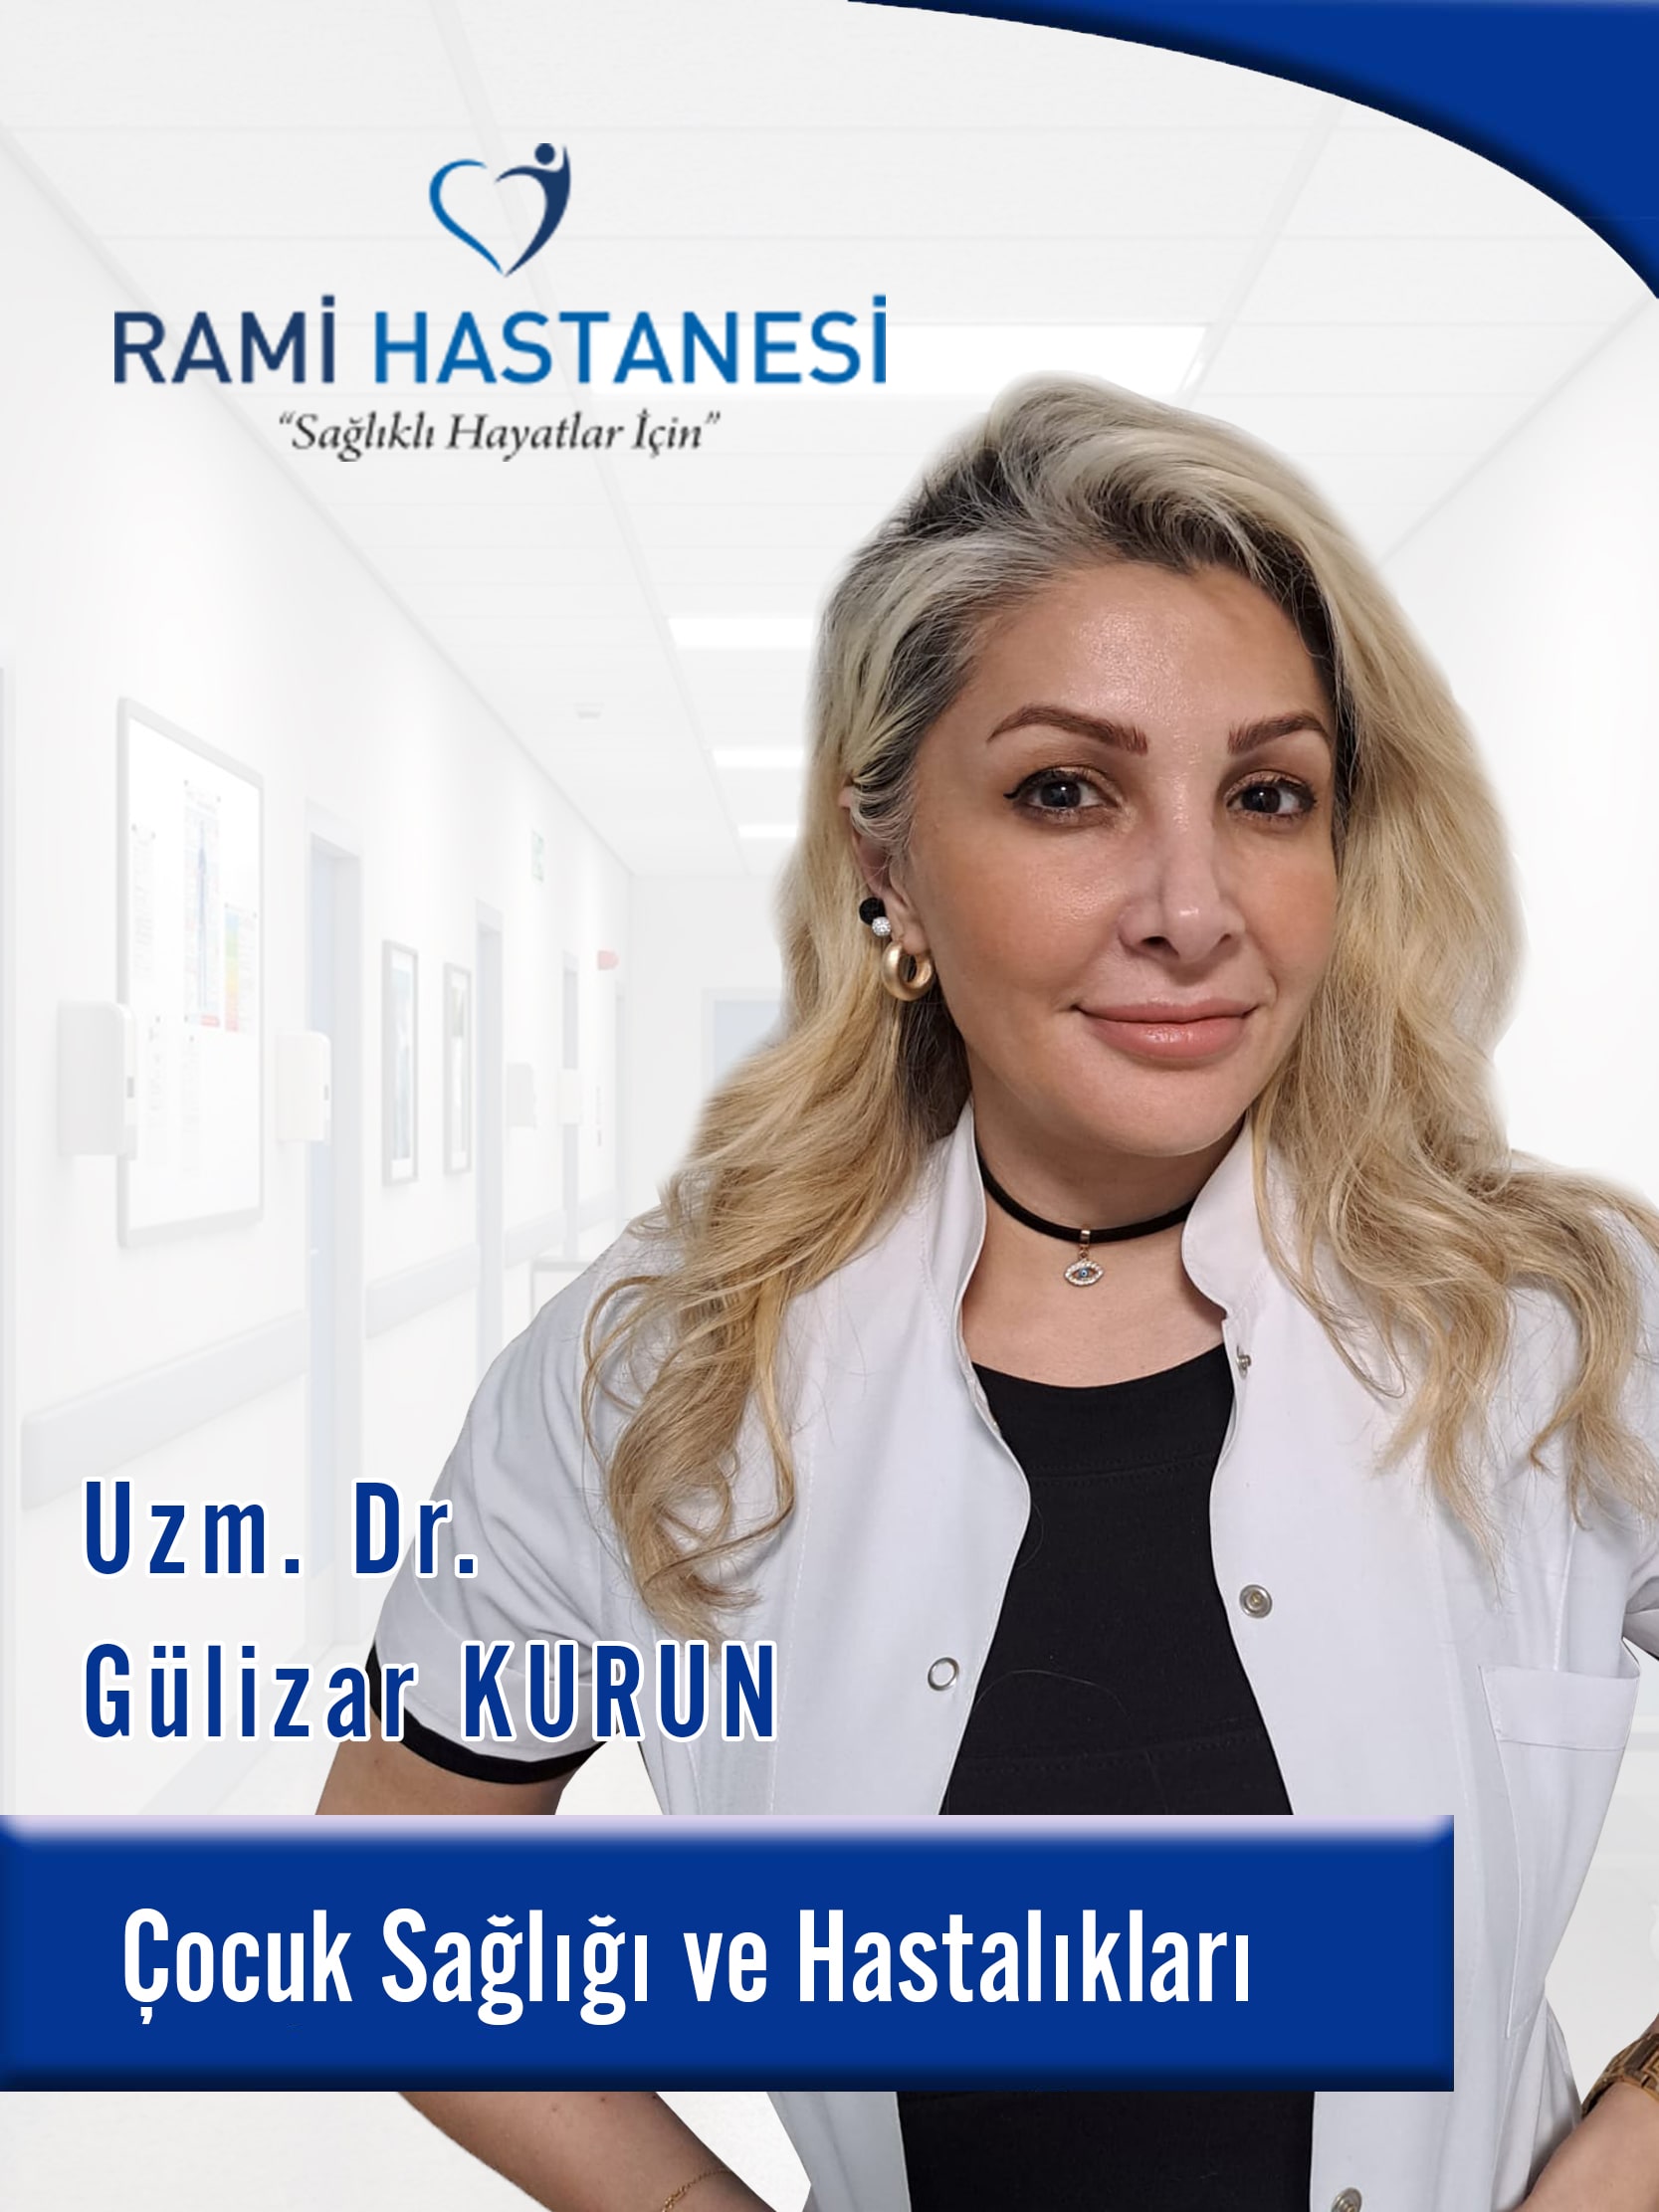 الدكتور الاخصائي Gülizar KURUN